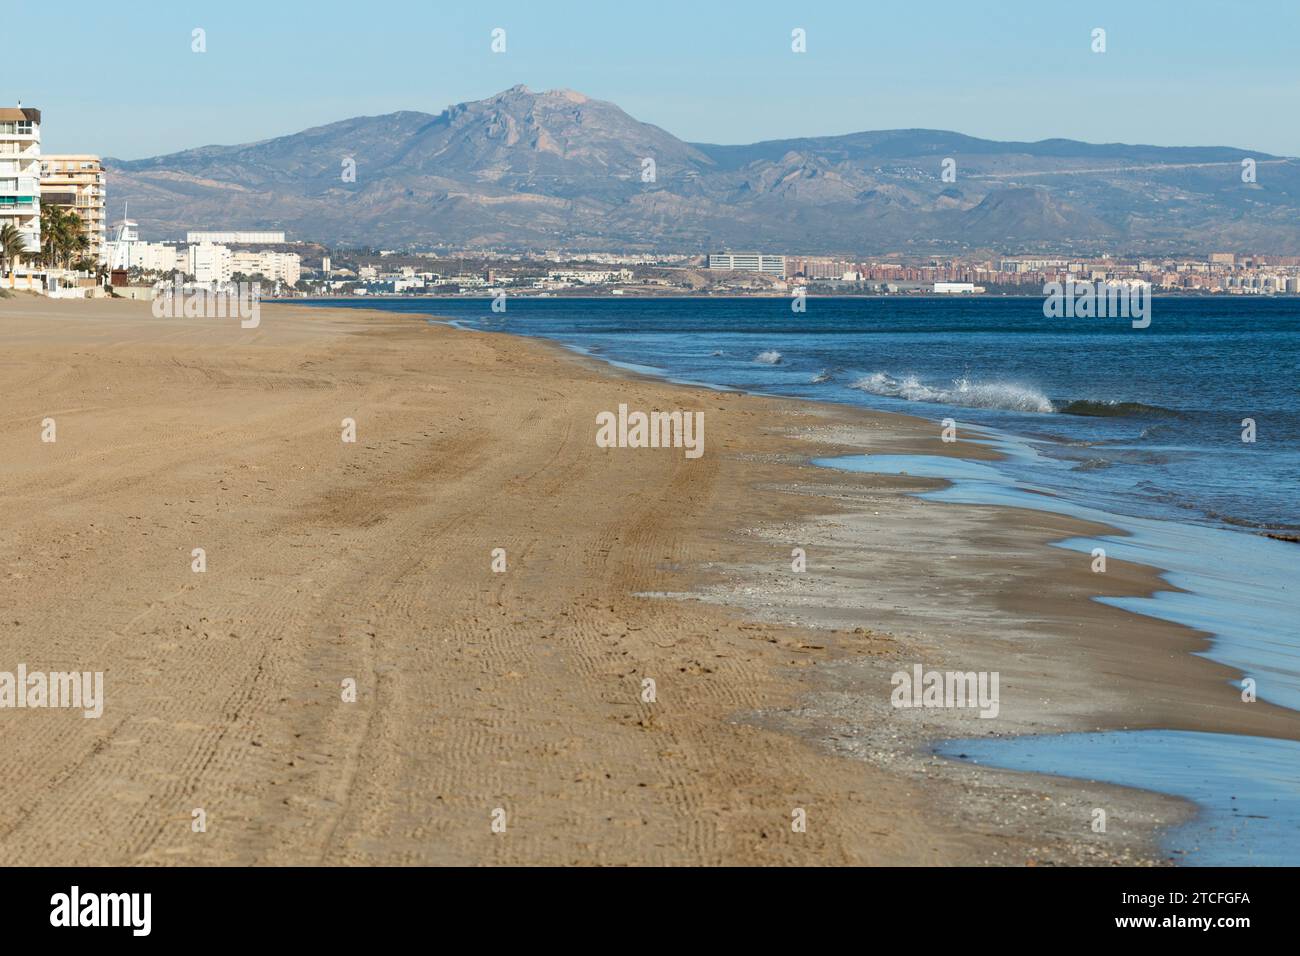 Paysage sur la plage de Carabassi à Arenales del sol avec Alicante et Maigmo en arrière-plan. Espagne Banque D'Images